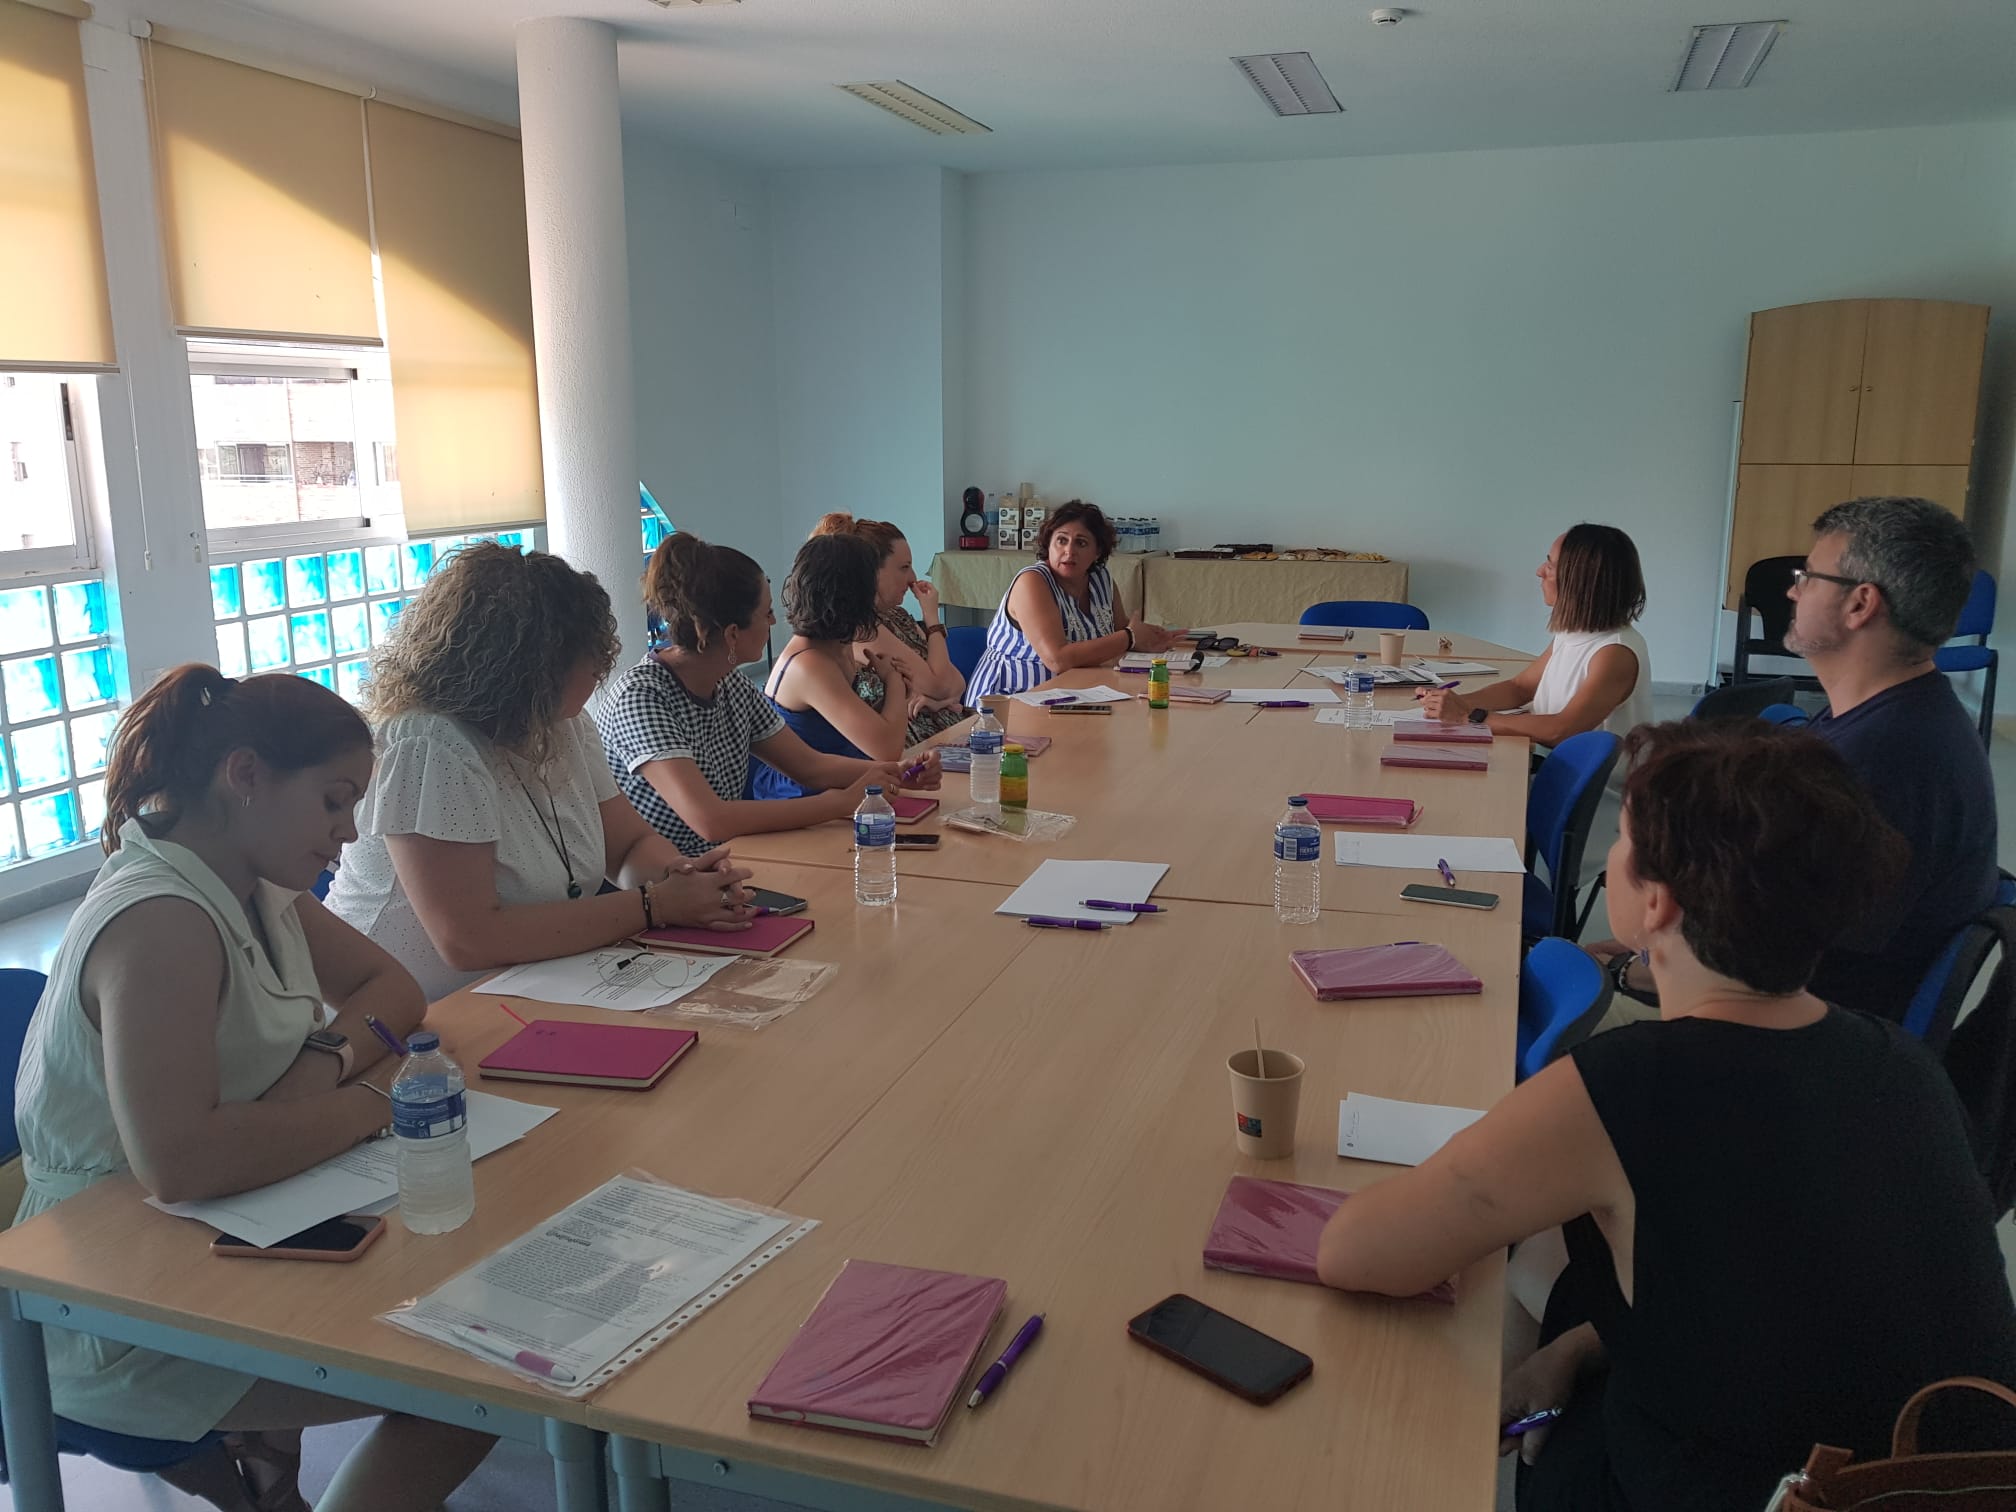 El Consell Comarcal per la Igualtat de la Marina Baixa es va reunir ahir a la Vila Joiosa. Les regidores i tècniques d’igualtat van abordar qüestions relacionades amb la celebració d’activitats i projectes entorn del Dia Internacional contra la Violència de Gènere, i van posar en comú els diferents programes de coeducació en els centres educatius. L’agenda comarcal per al 25N es tancarà en la pròxima reunió que se celebrarà el dia 17 d’octubre a Altea.